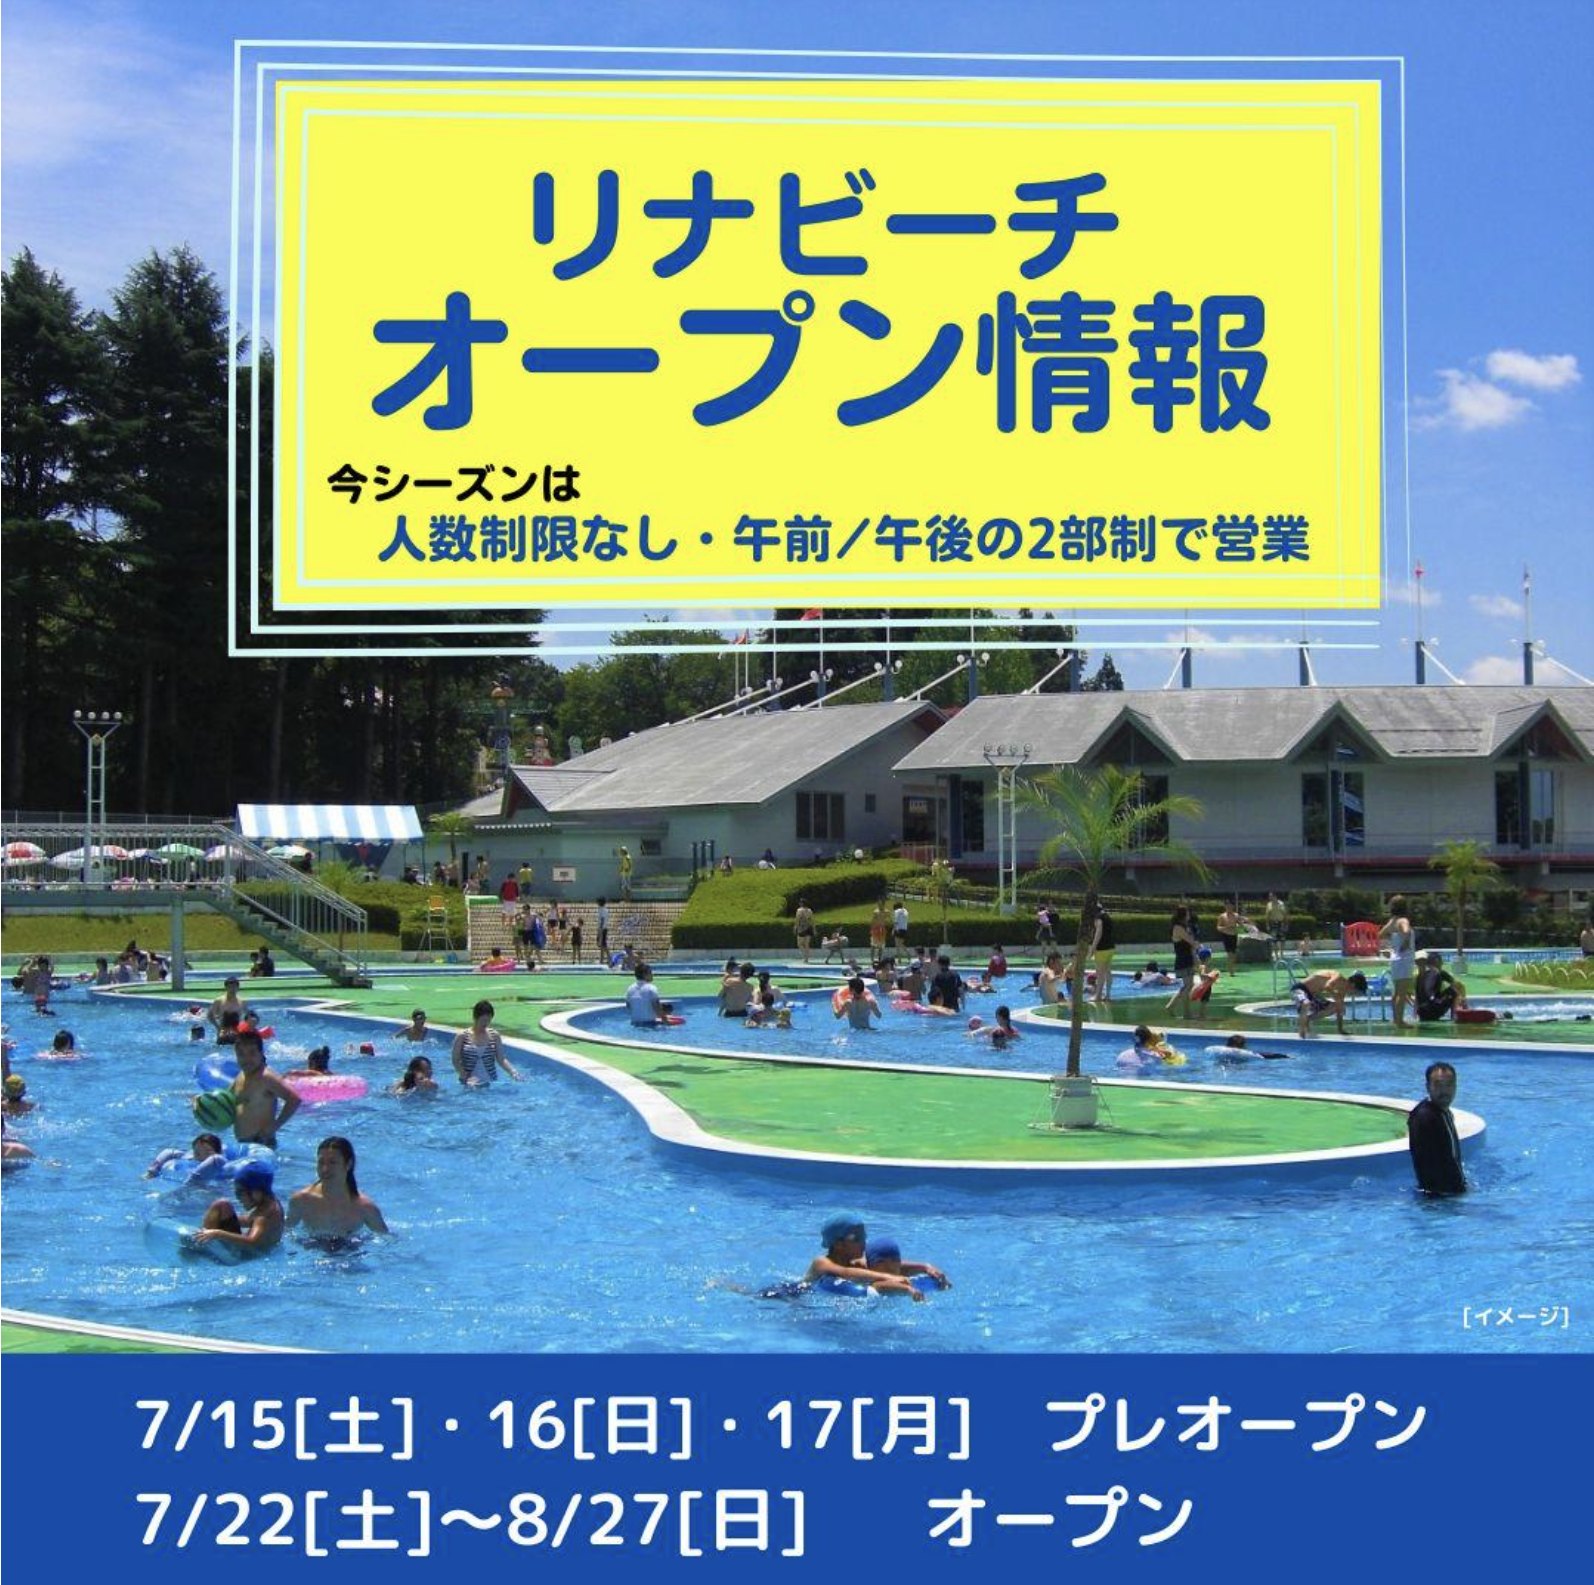 【山形オープン情報】7/15〜17の3日間 リナビーチがプレオープンします。(上山市)